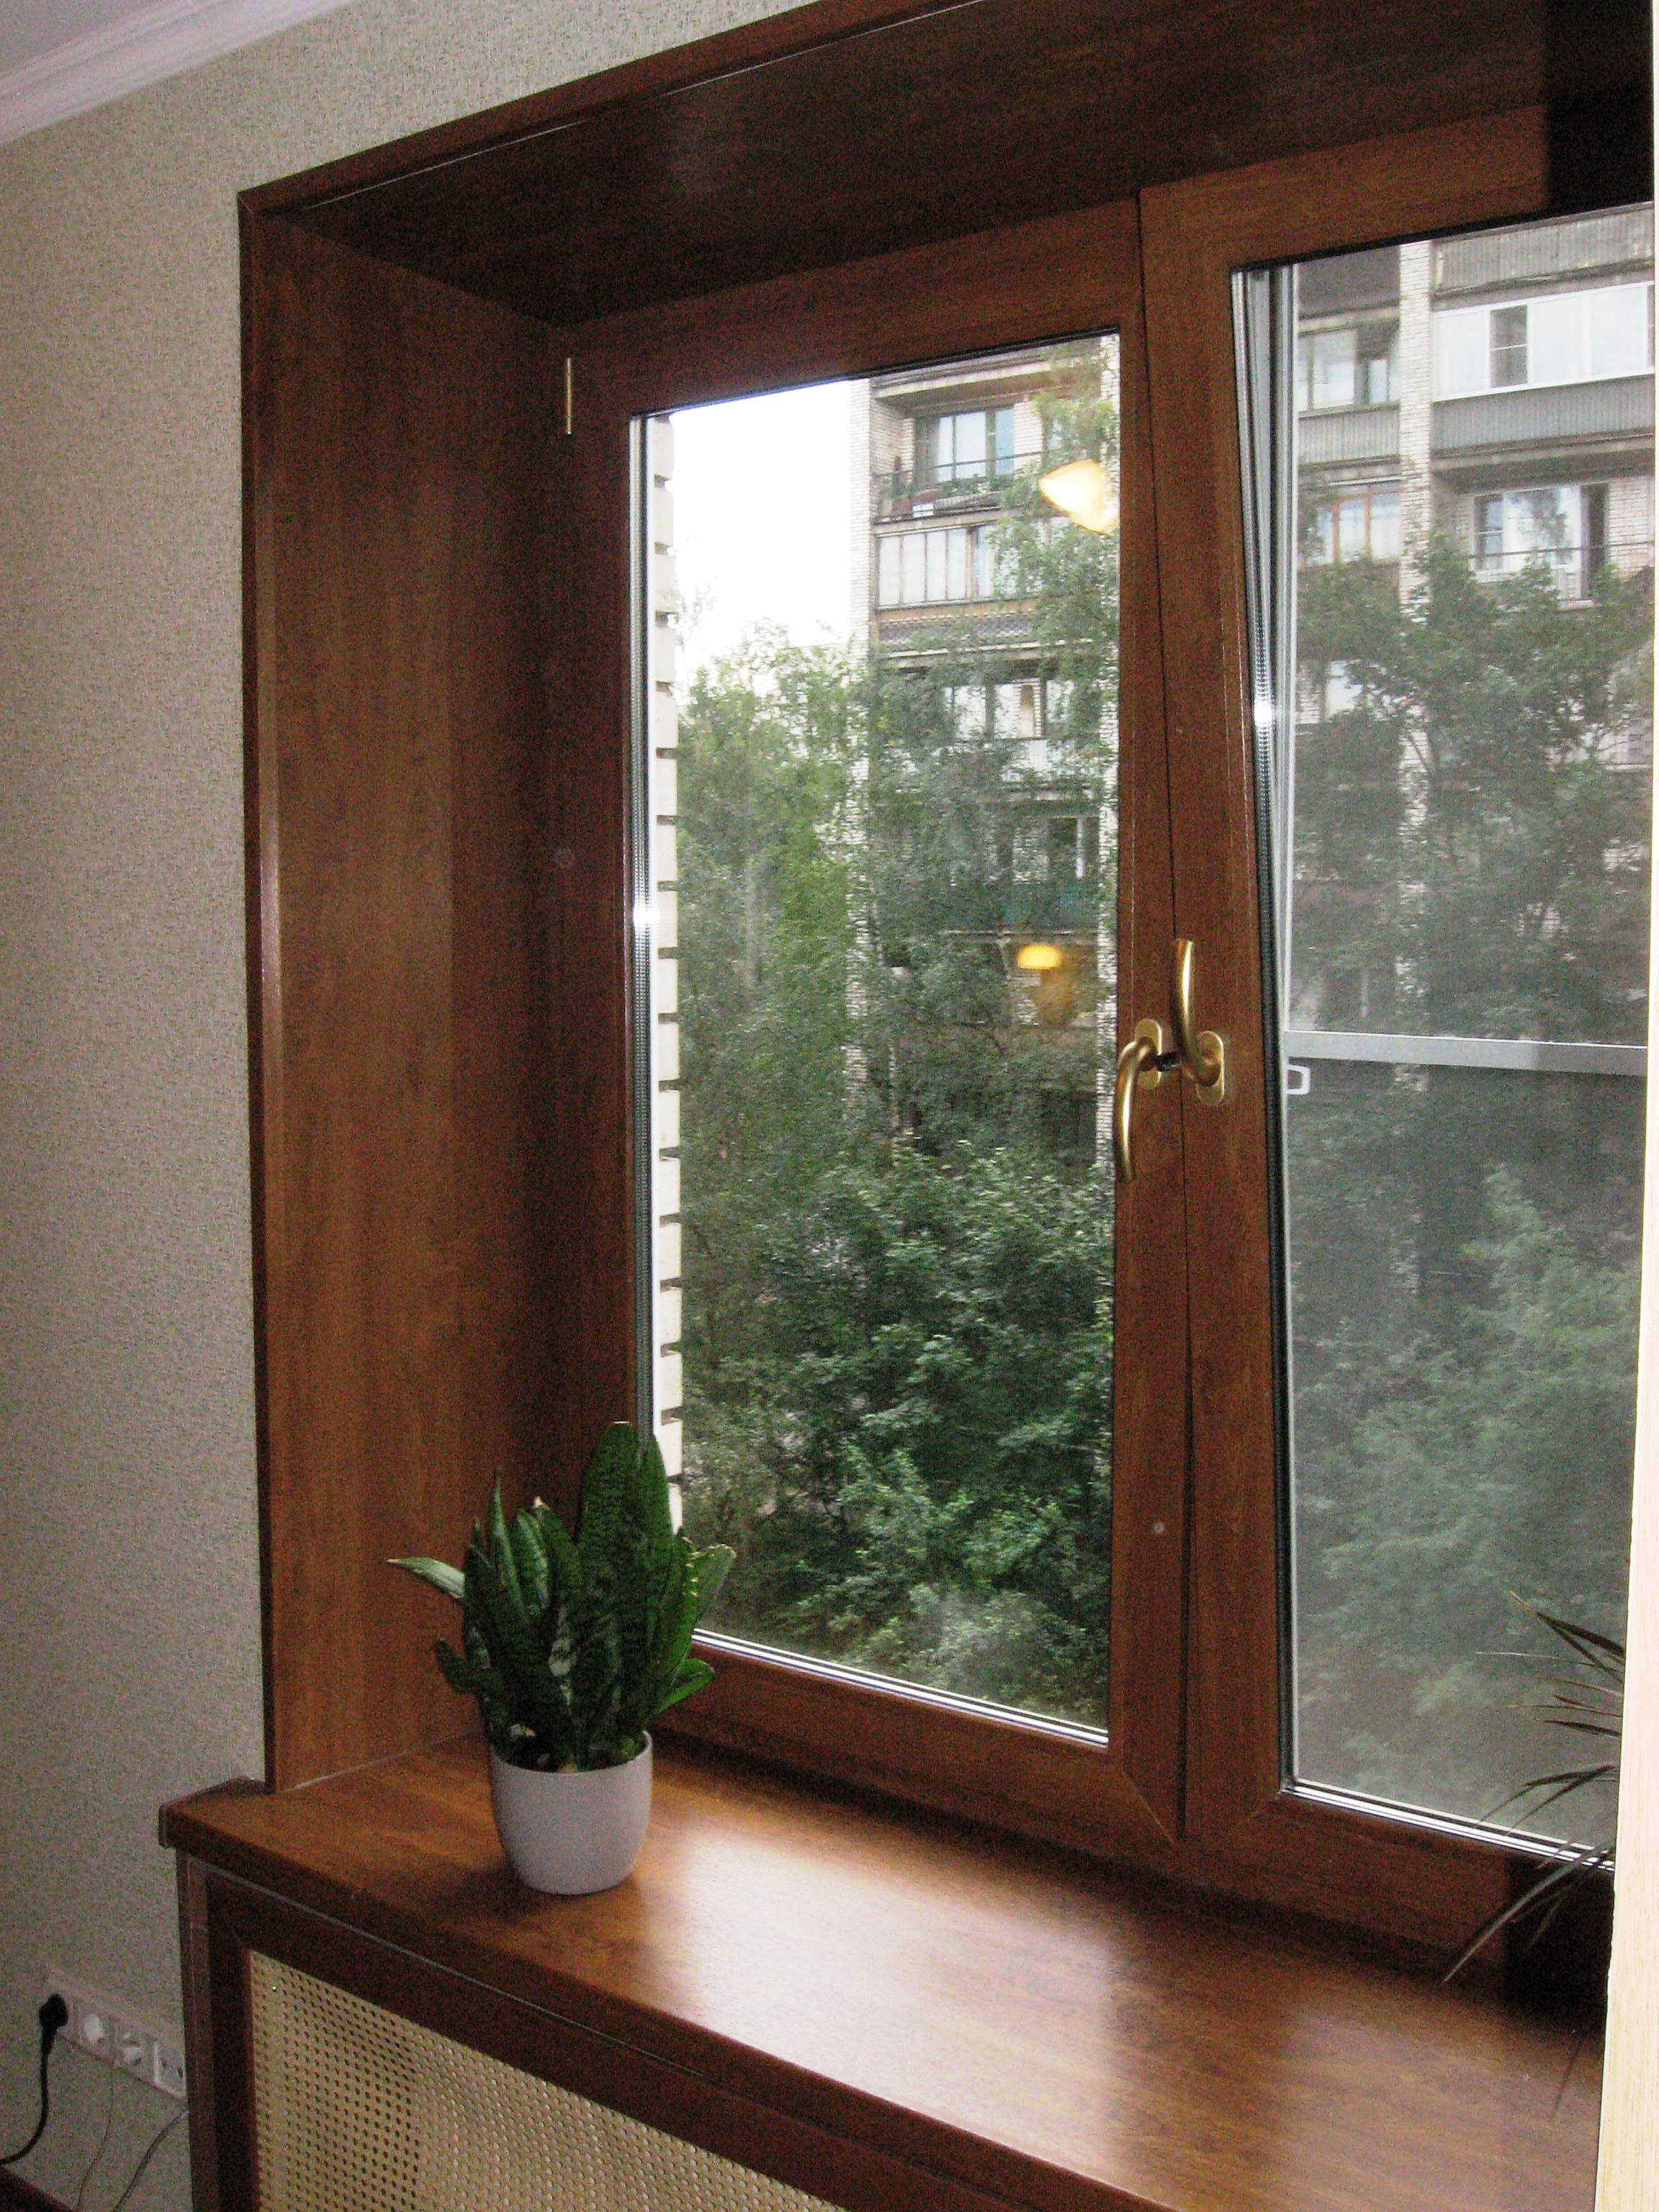 Пластиковые окна - остекление и отделка балконов. - ремонт и строительство в москва на сайте бесплатных объявлений tvoemoe.com.